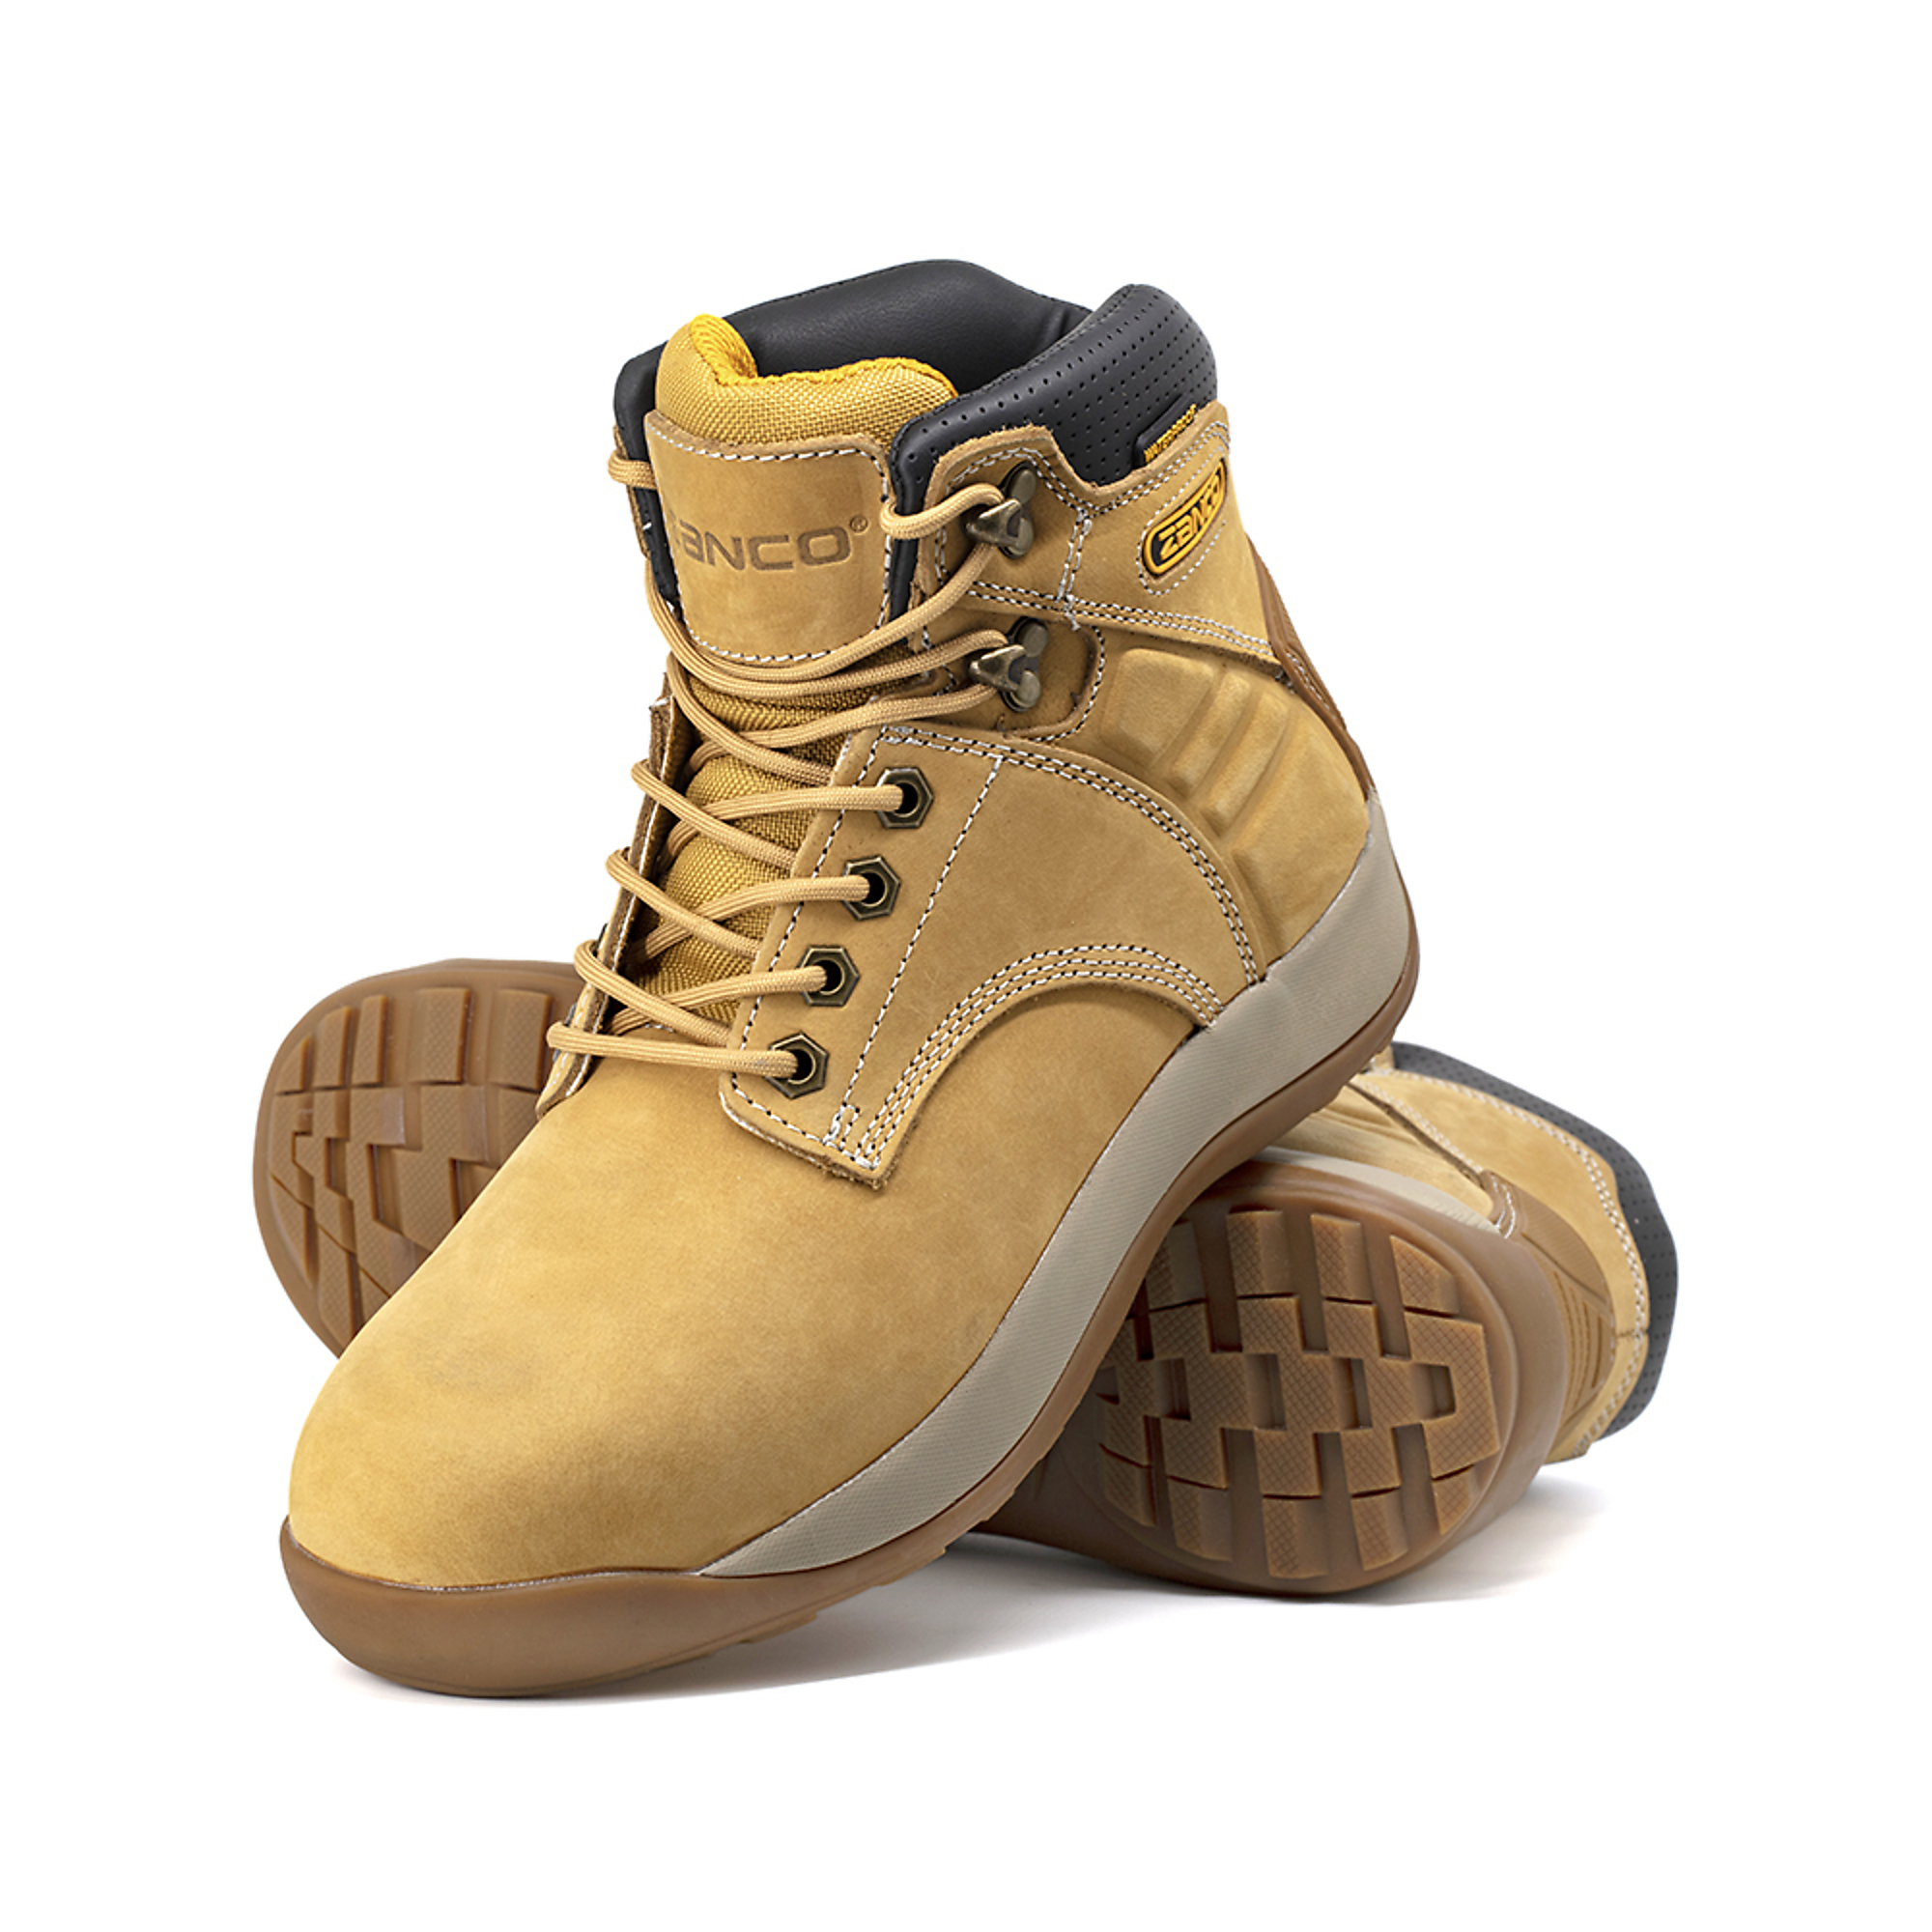 Zanco, Men's Waterproof,Steel toe,EH,Safety boots, Size 8, Width Medium, Color WHEAT, Model 8236-16-8